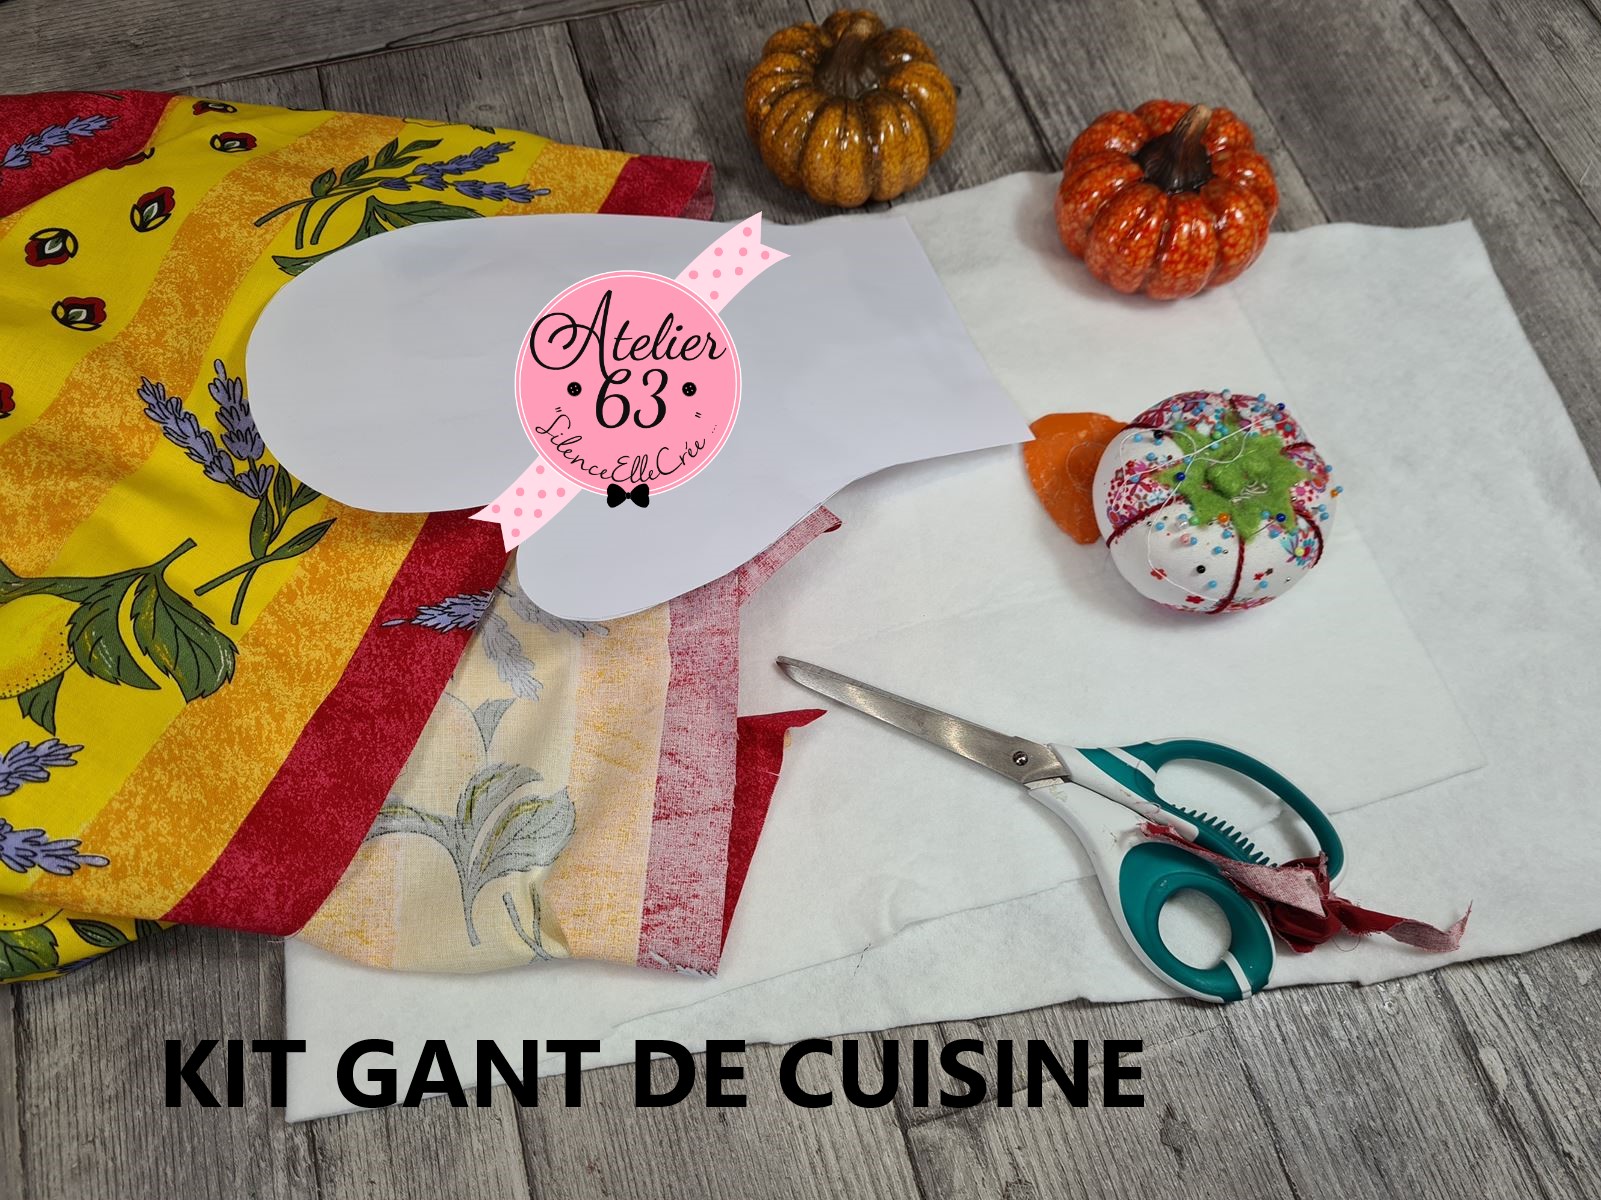 gant-de-cuisine-tutoriel-facile-couleur-provence-a-faire-a-offrir-kit-creatif-